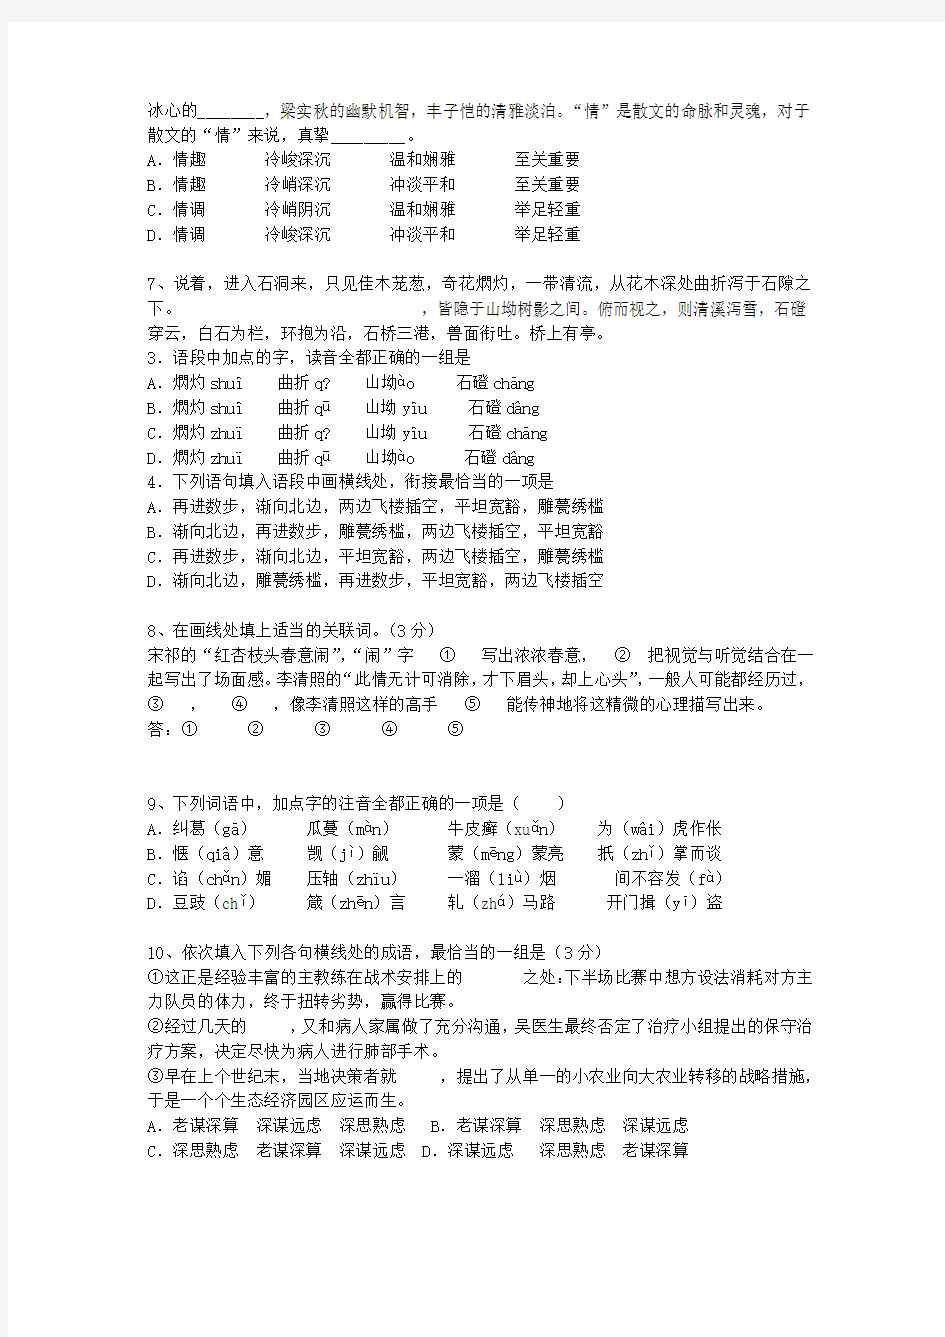 2014河北省高考语文试题及详细答案最新考试试题库(完整版)